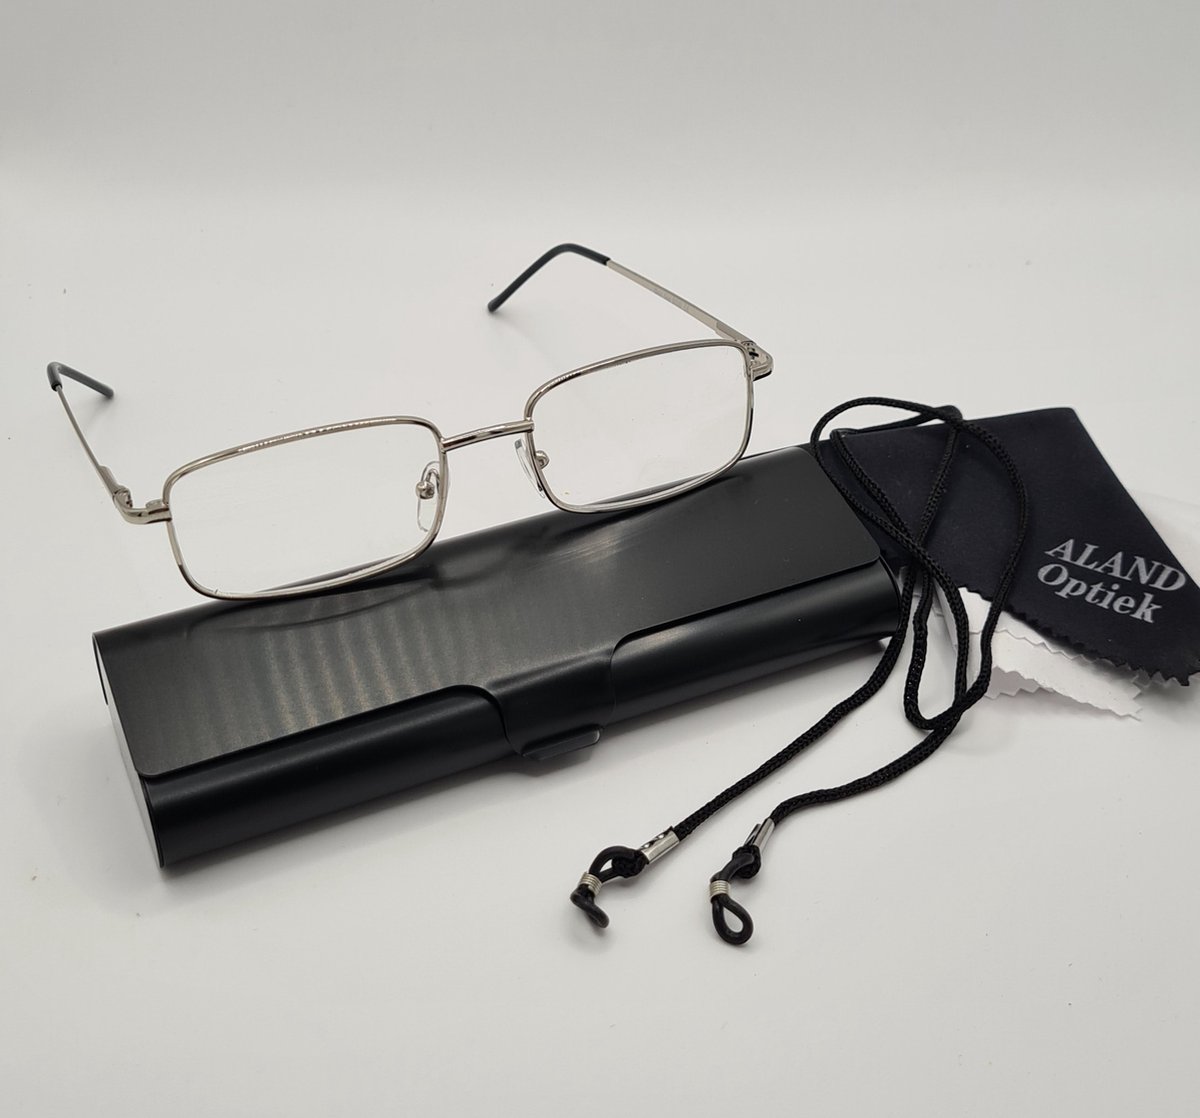 Unisex leesbril +2,0 met brillenkoker + koord + microvezeldoekje / class one 5000 / zilver / +2.0 lunettes de lecture avec étui pratique, cordon et chiffon de nettoyage pour lentilles / Aland optiek